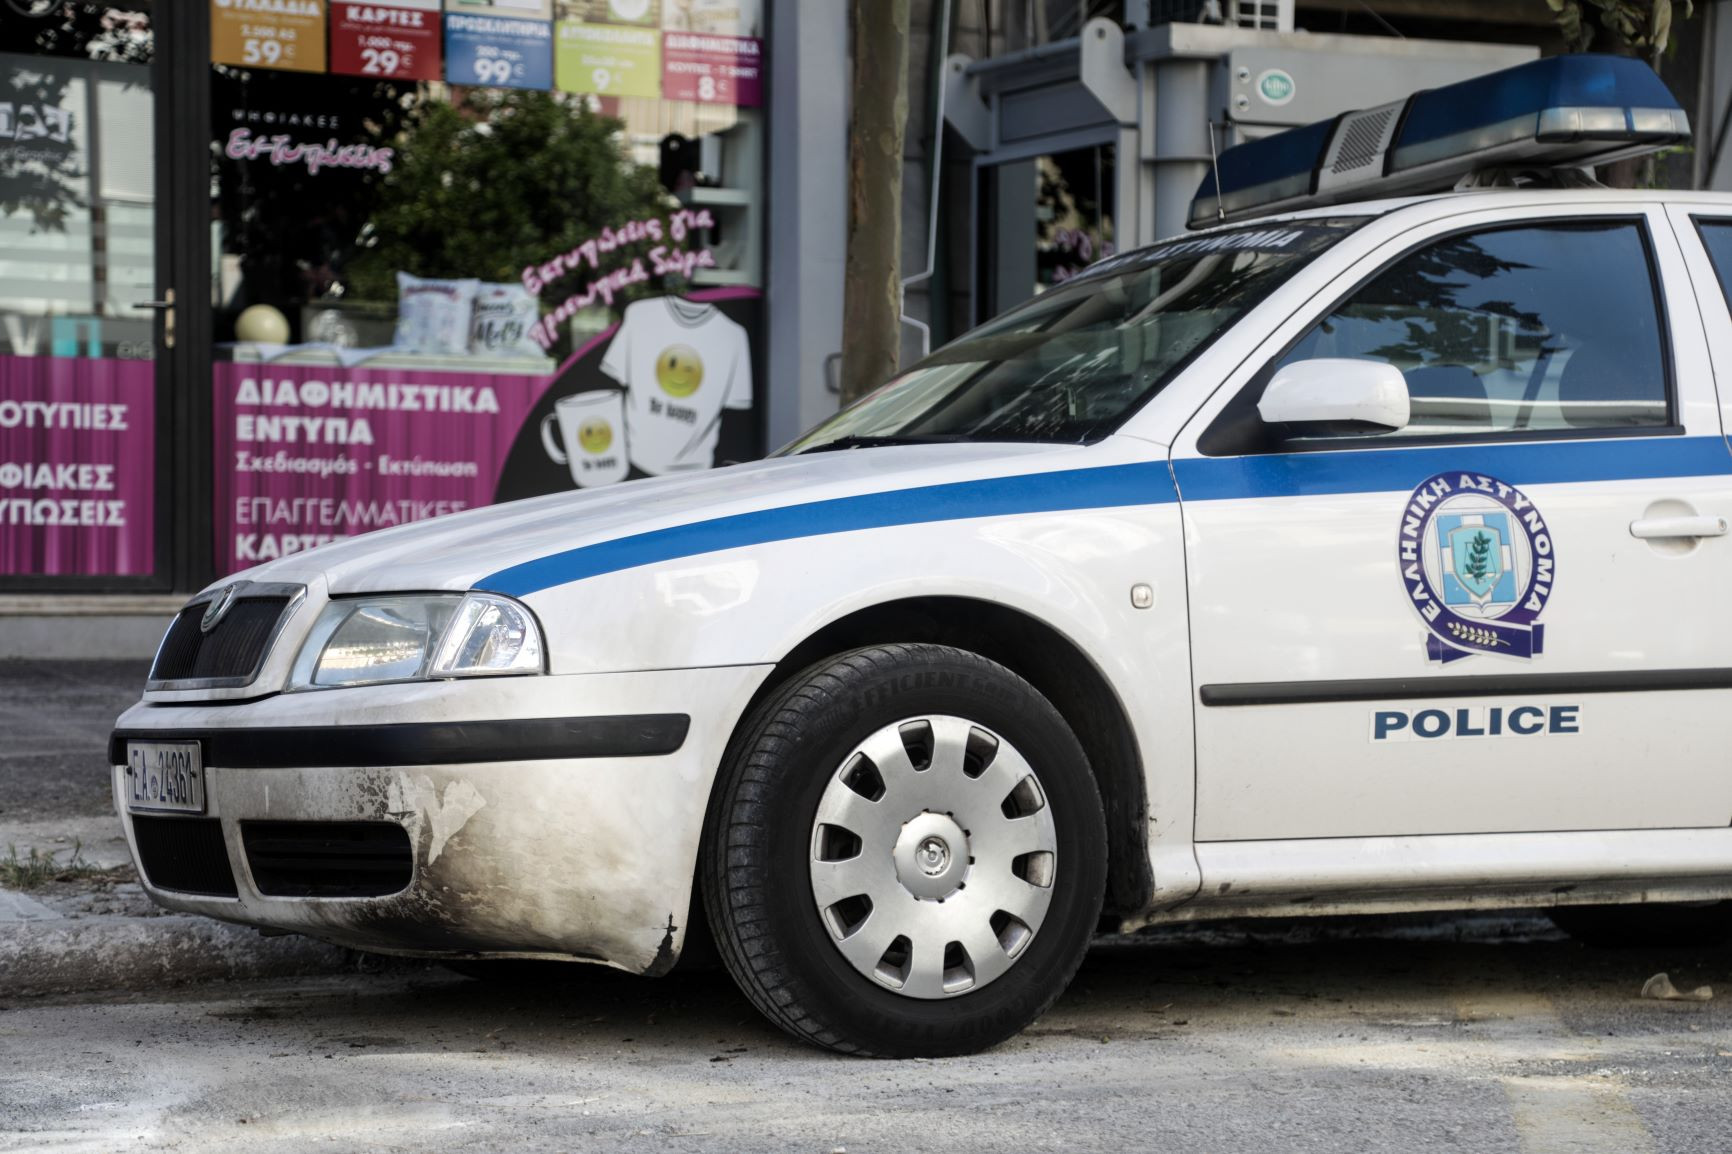 Θεσσαλονίκη: Αστυνομικός πήρε τα γλυκά και ξέχασε το όπλο με τον γεμιστήρα μέσα σε ζαχαροπλαστείο